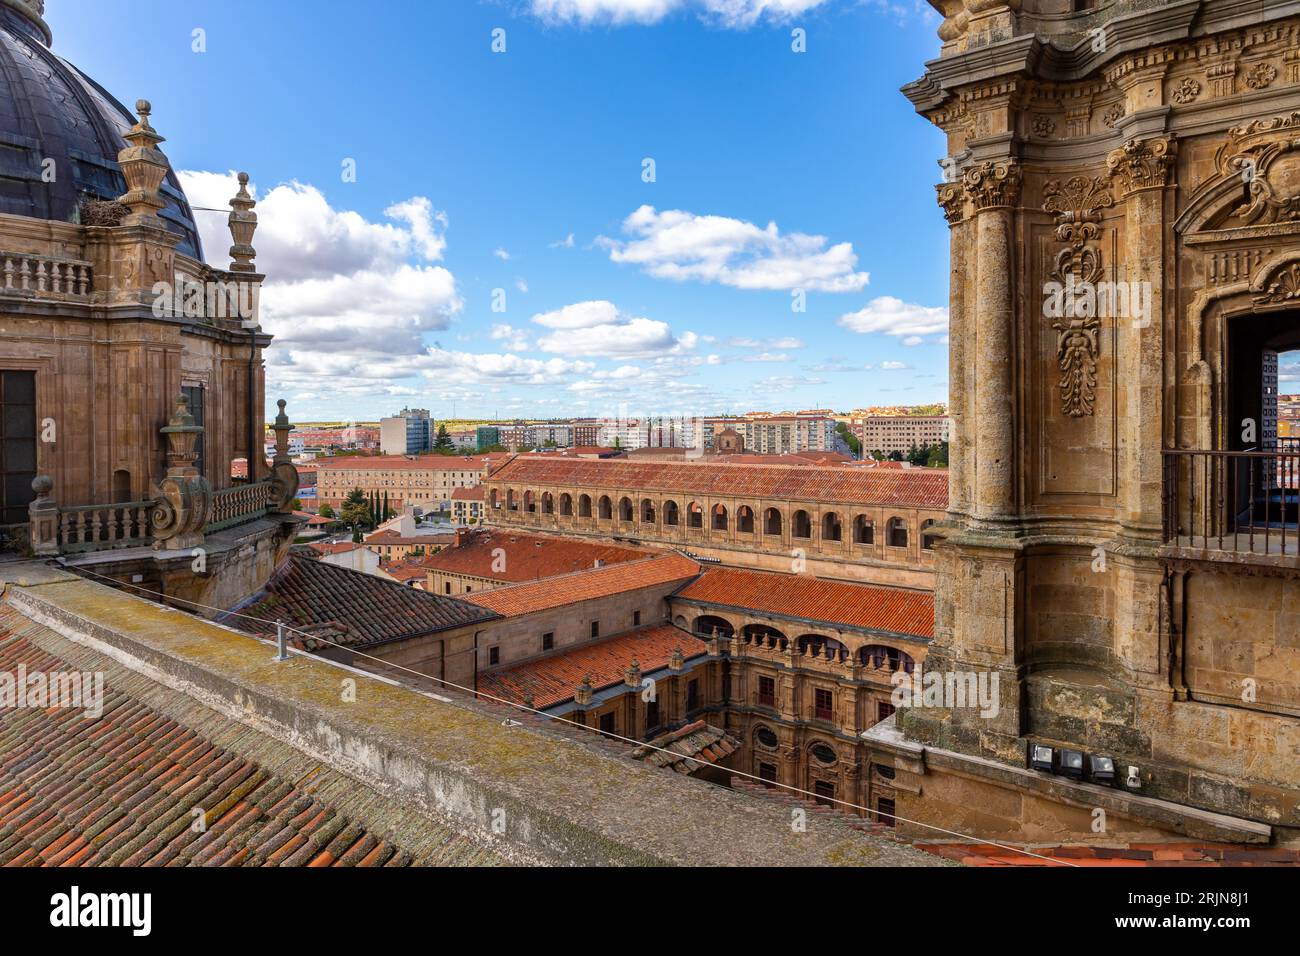 Tetto dell'edificio la Clerecia a Salamanca, Spagna, con campanili decorativi barocchi, facciate scolpite, paesaggio urbano di Salamanca con Corte di studi. Foto Stock